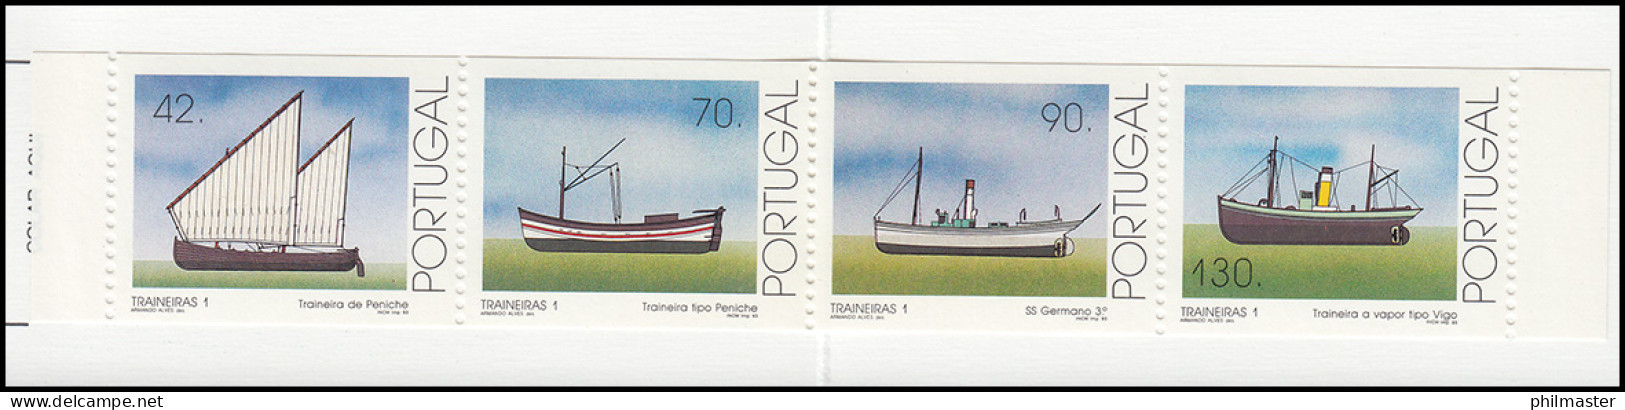 Portugal-Markenheftchen 10 Küstenfischerei Schleppnetzschiffe 1993, Postfrisch - Markenheftchen